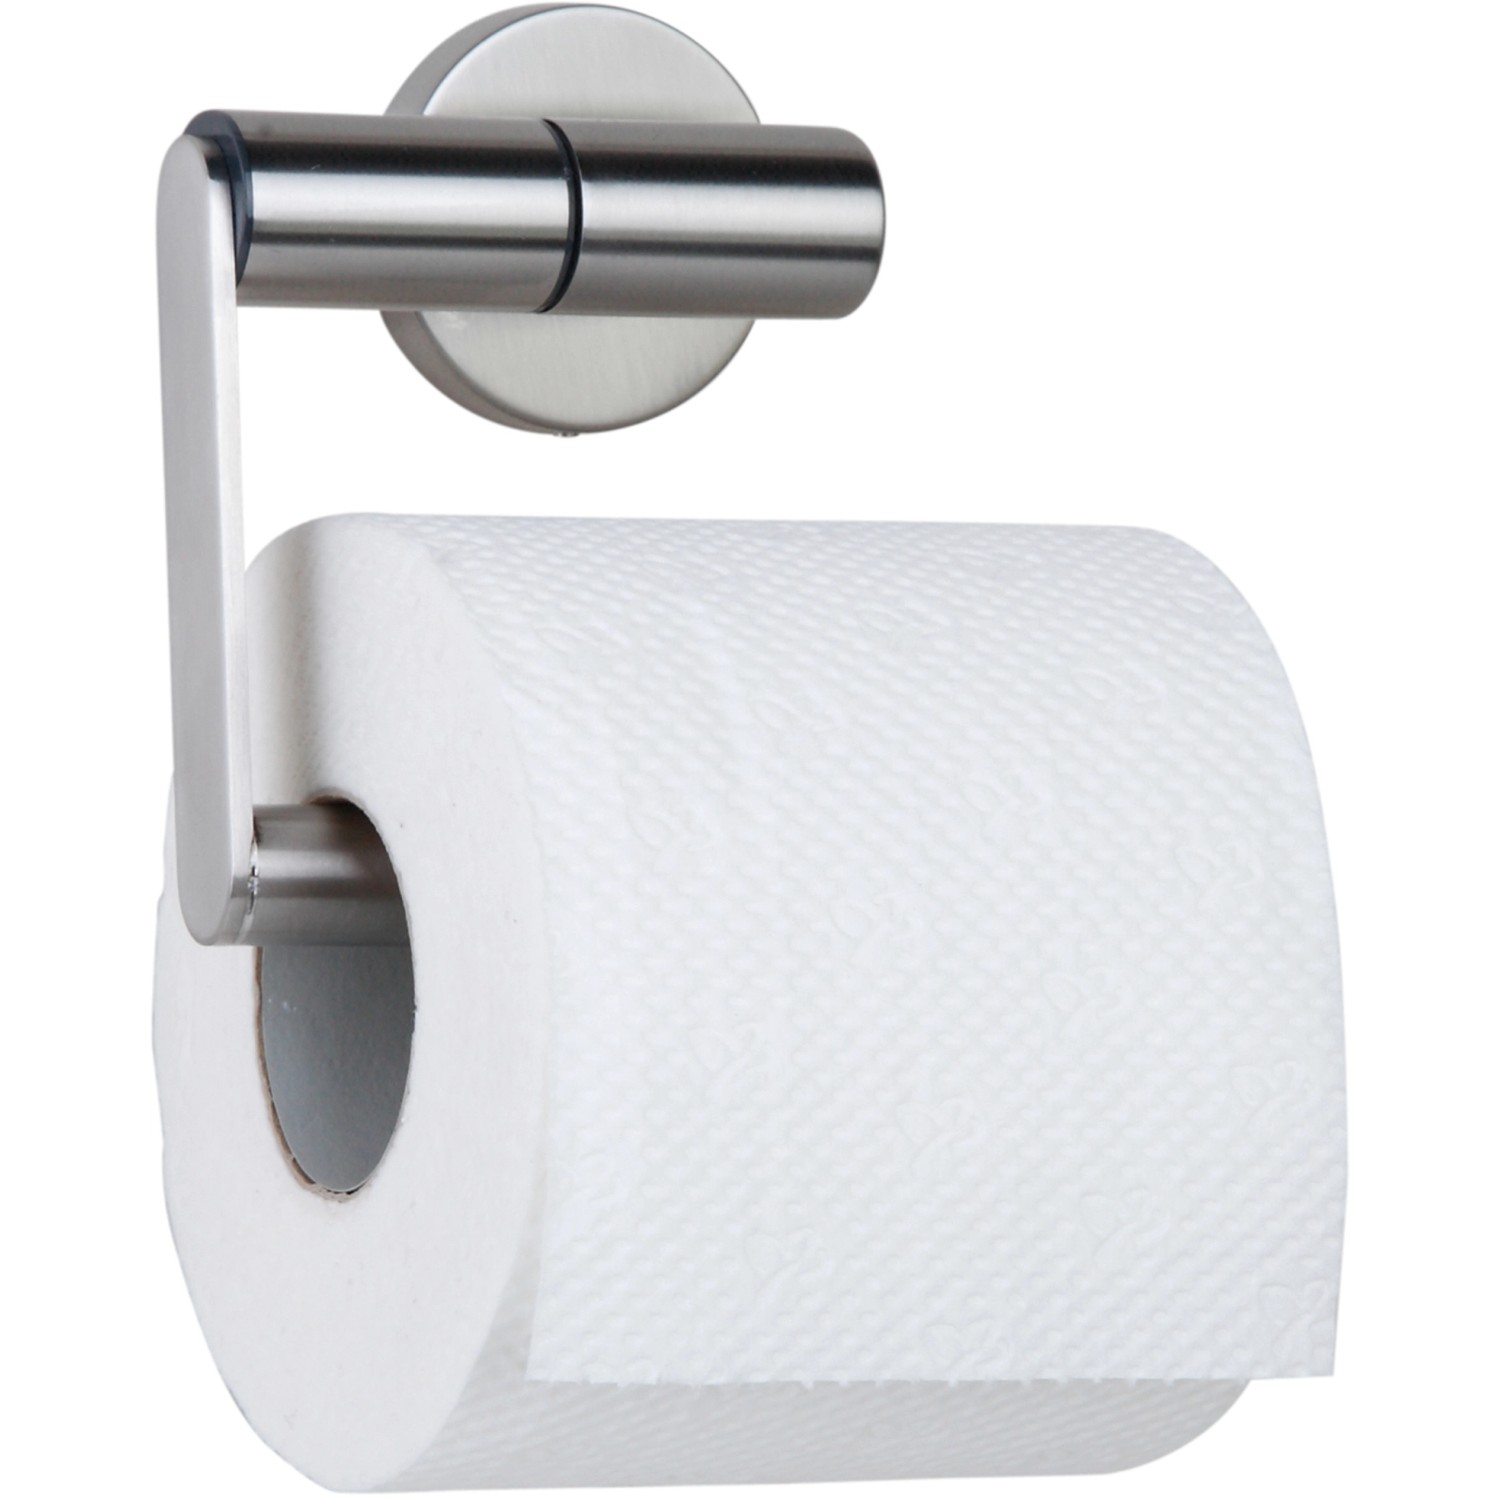 Tiger Toilettenpapierhalter Boston inkl. Befestigungsmaterial günstig online kaufen